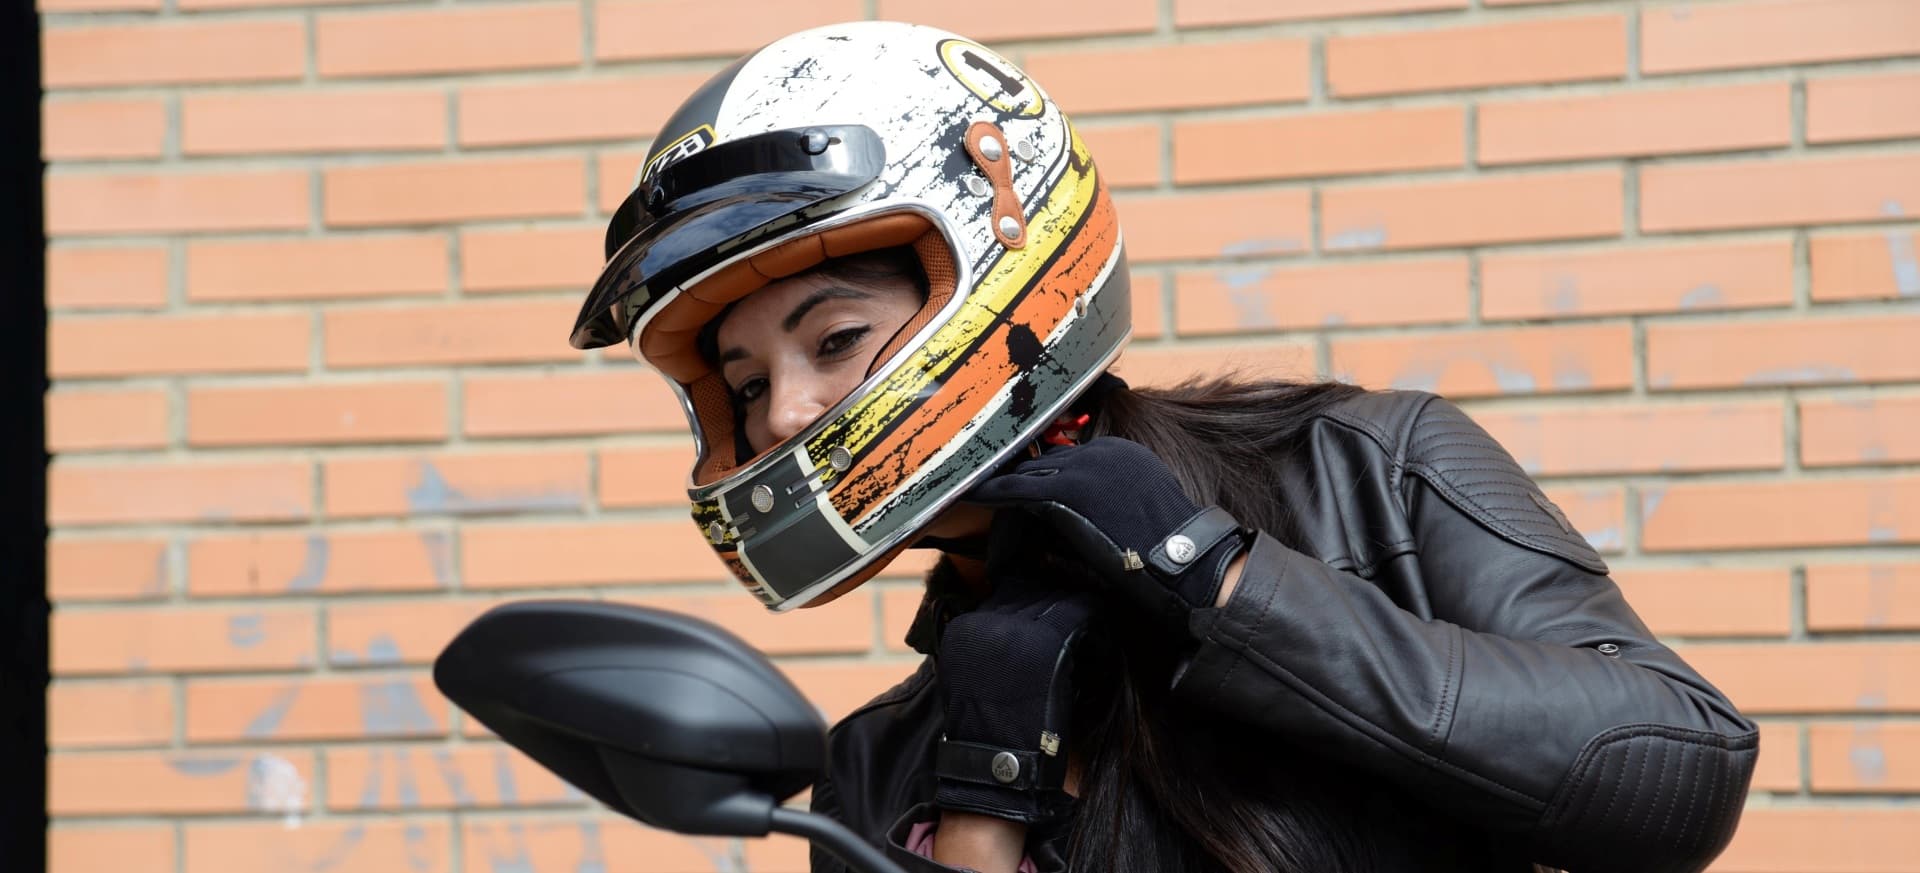 Talentoso Cirugía Acostado Consejos elegir casco de moto